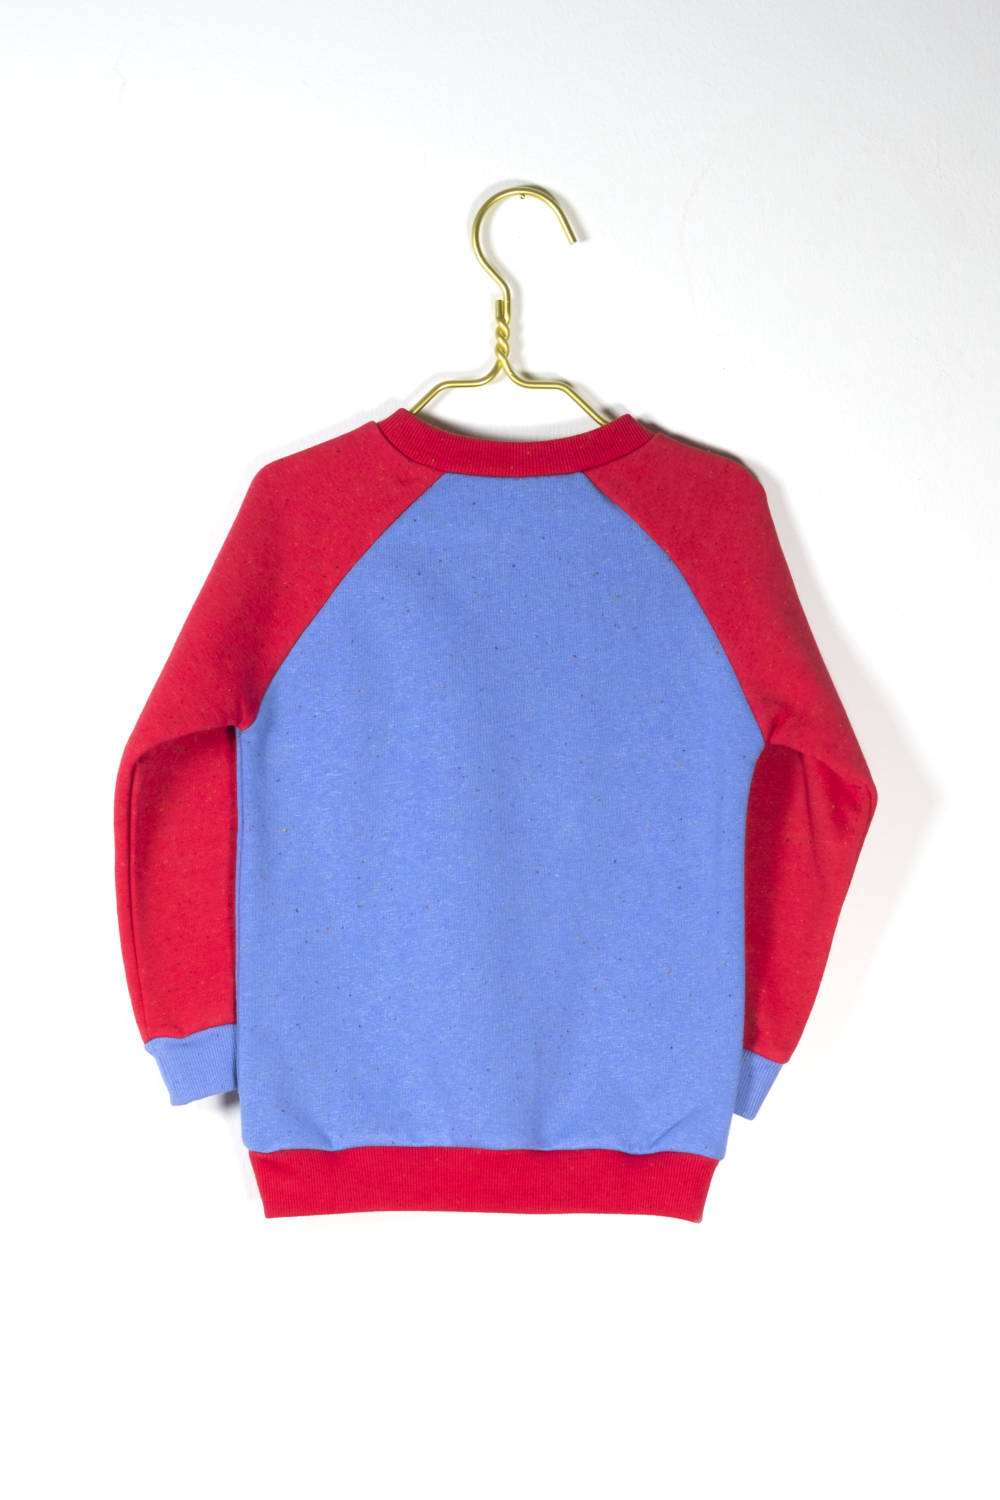 LOVE kidswear Louie Sweater blue & red